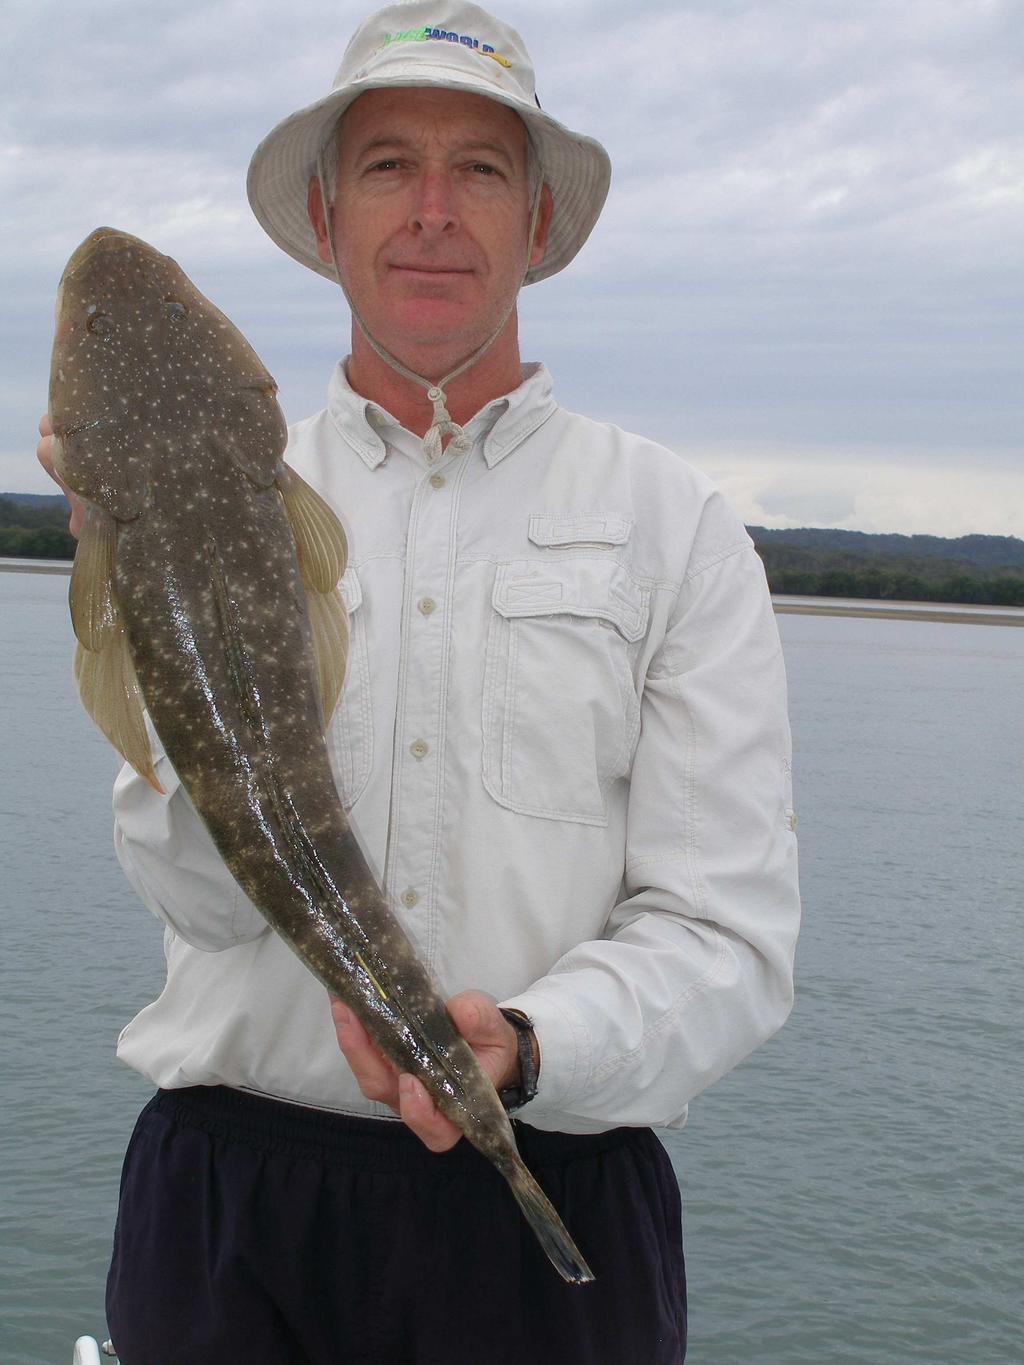 Southern Brisbane Sportfishing Club Inc. P.O. Box 5057 Eagleby. Qld 4207 Editor: Jeff Maddalena jrmaddalena@bigpond.